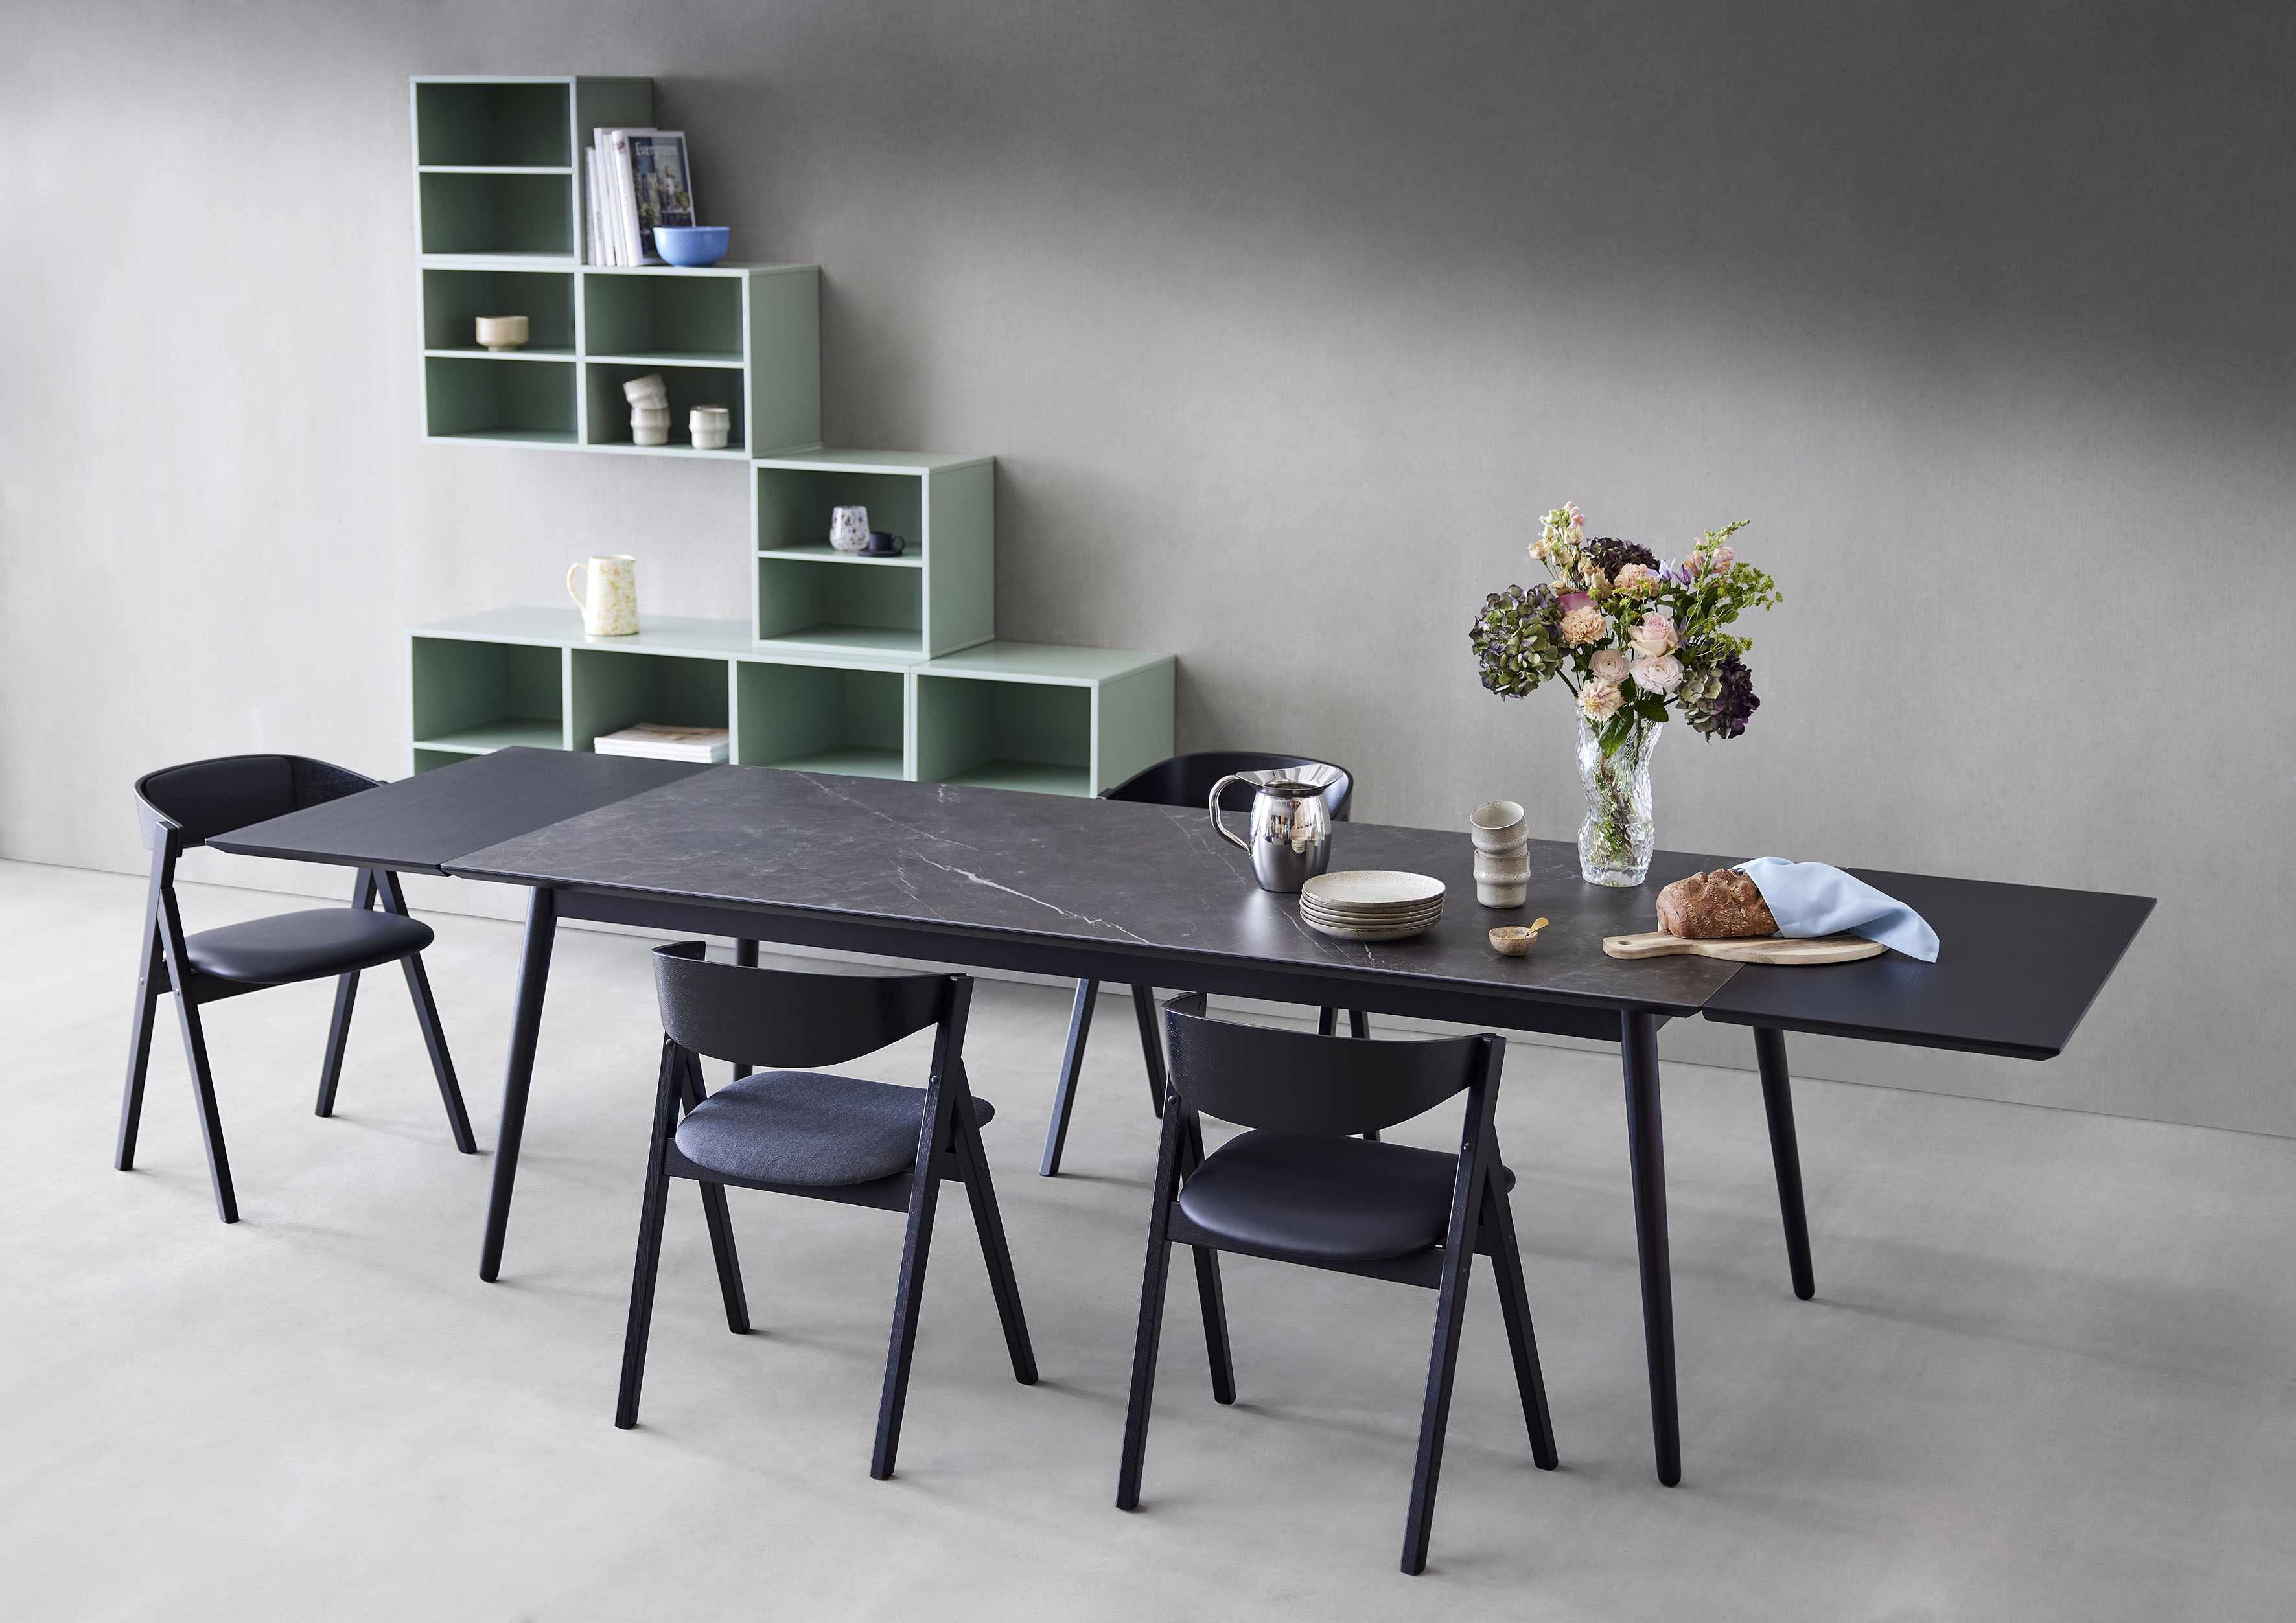 Hammel Furniture Esstisch Batu, Tischplatte aus Keramik, Schwarz Beine aus Massivholz, mit Auszugsfunktion. Maße 220/320 x 95 cm. Dänische Handwerkskunst